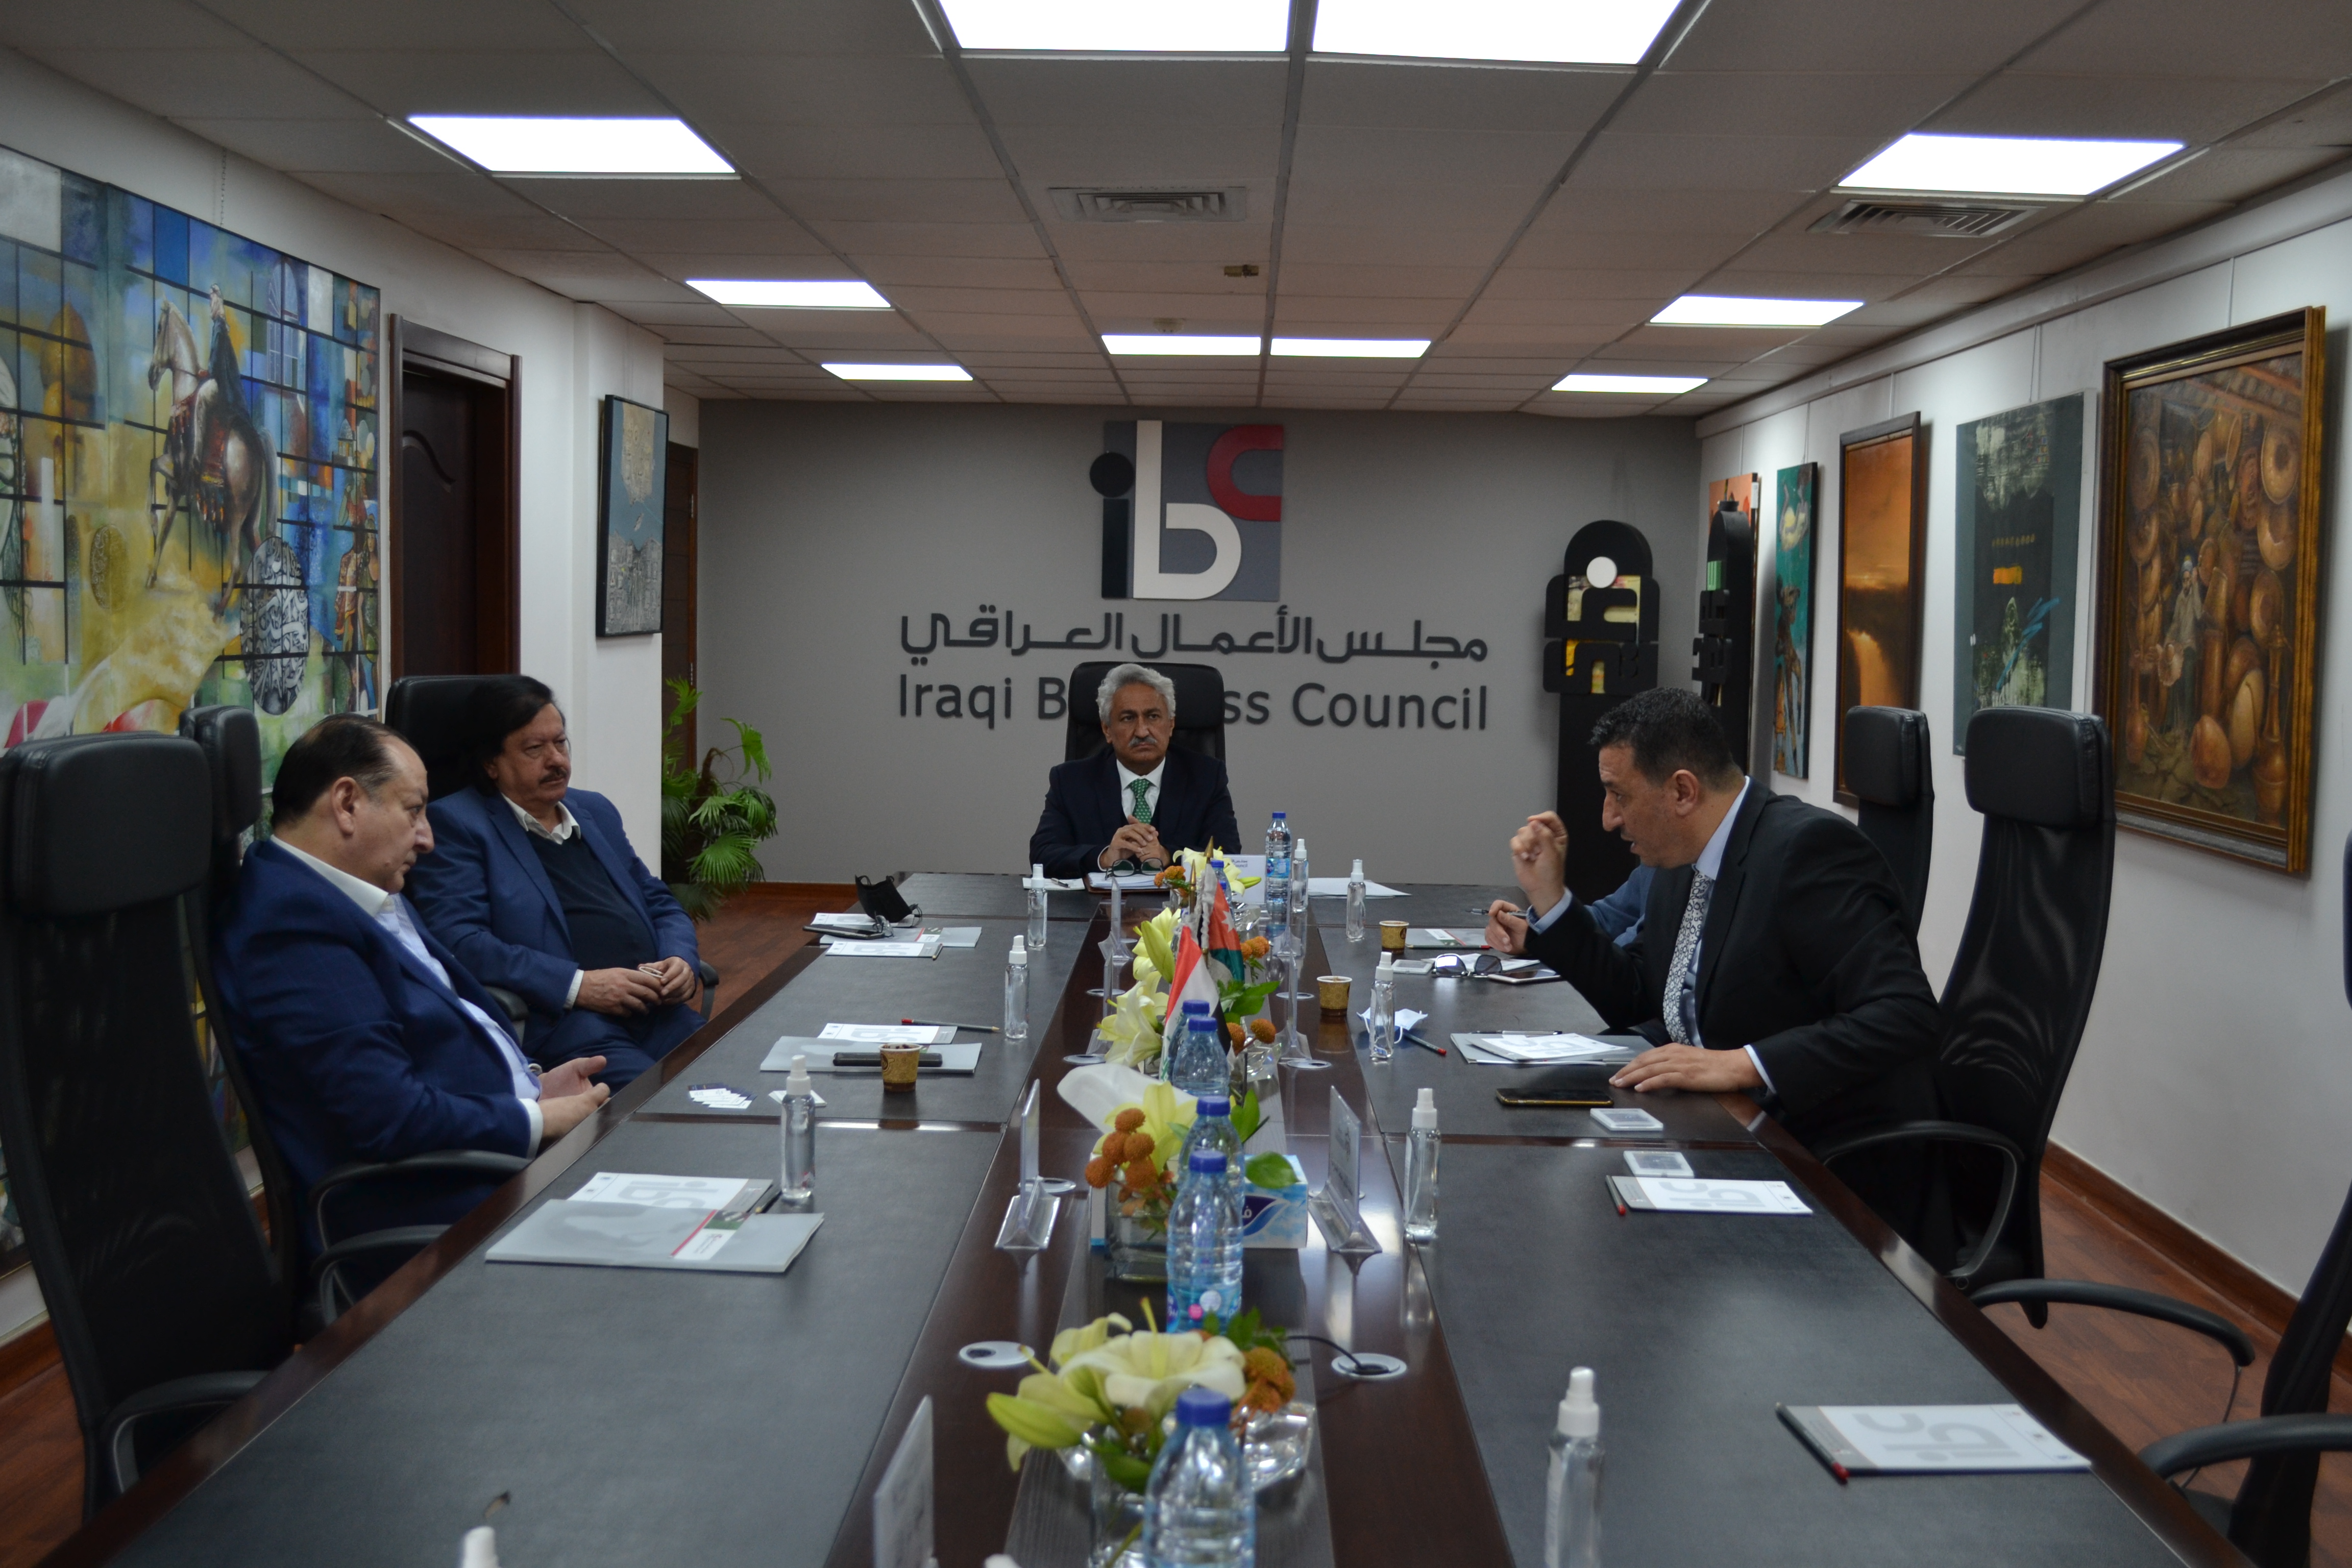 مجلس الاعمال العراقي | بوابة المستثمرين والشركات العراقية في الاردن